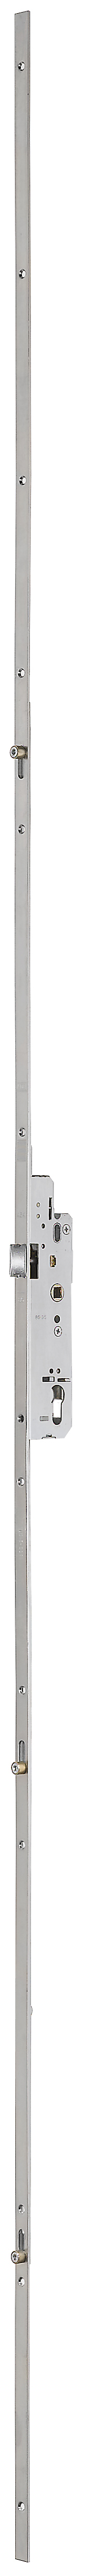 AGB -  Serratura Multipunto UNITOP MOD 457 meccanica con scrocco catenaccio e nottolini - entrata 40 - h min - max 1980 - 2400 (2400) - frontale 16 - interasse 92